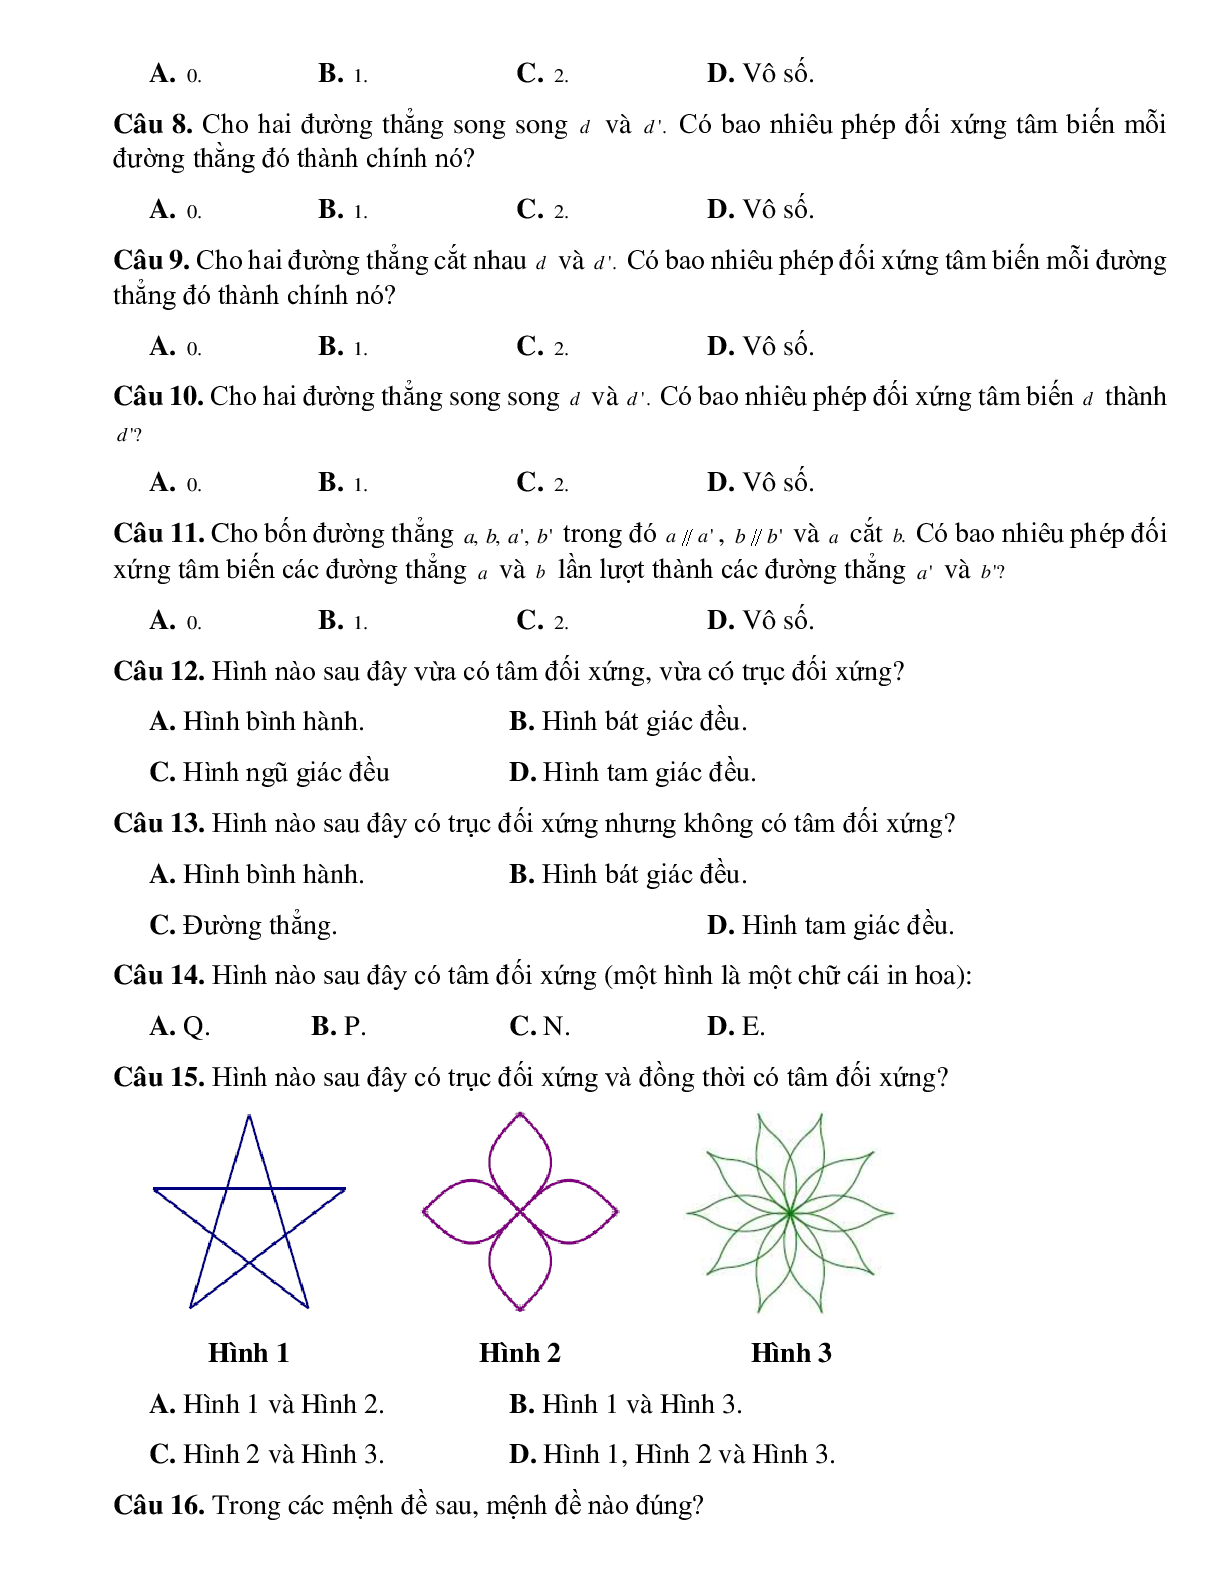 Bài tập Toán hình 11 Bài 4 có đáp án: Phép đối xứng tâm (trang 3)